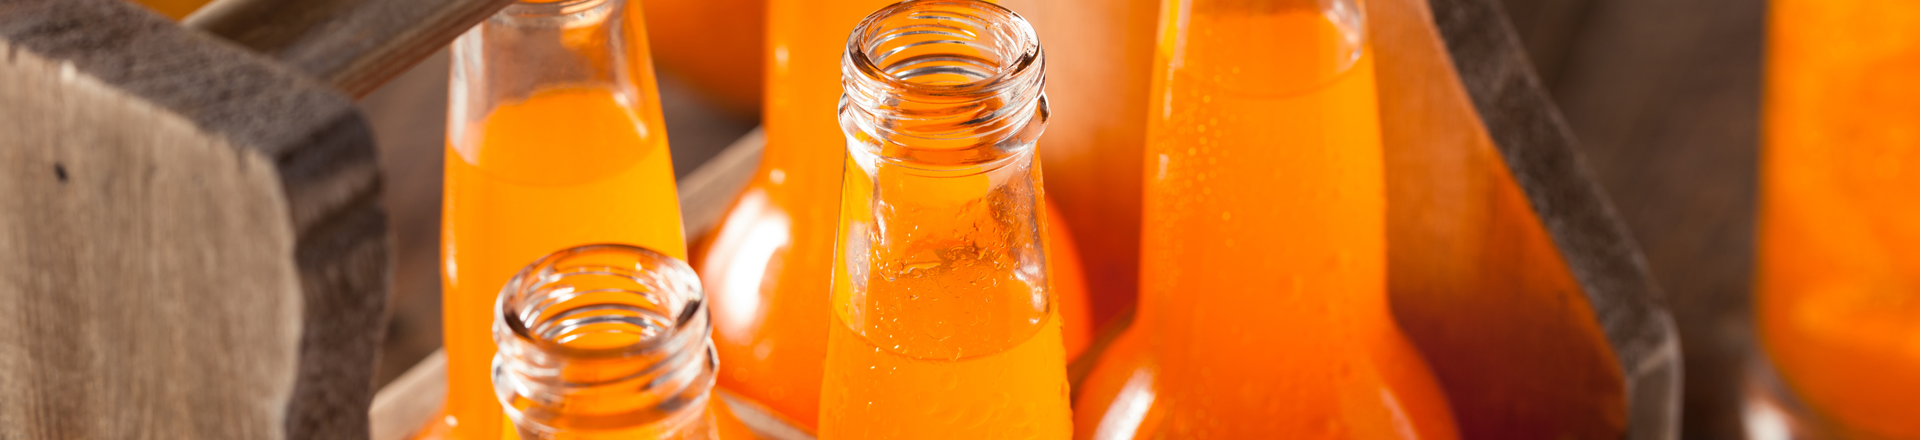 long neck glass orange soda bottles in a wooden case